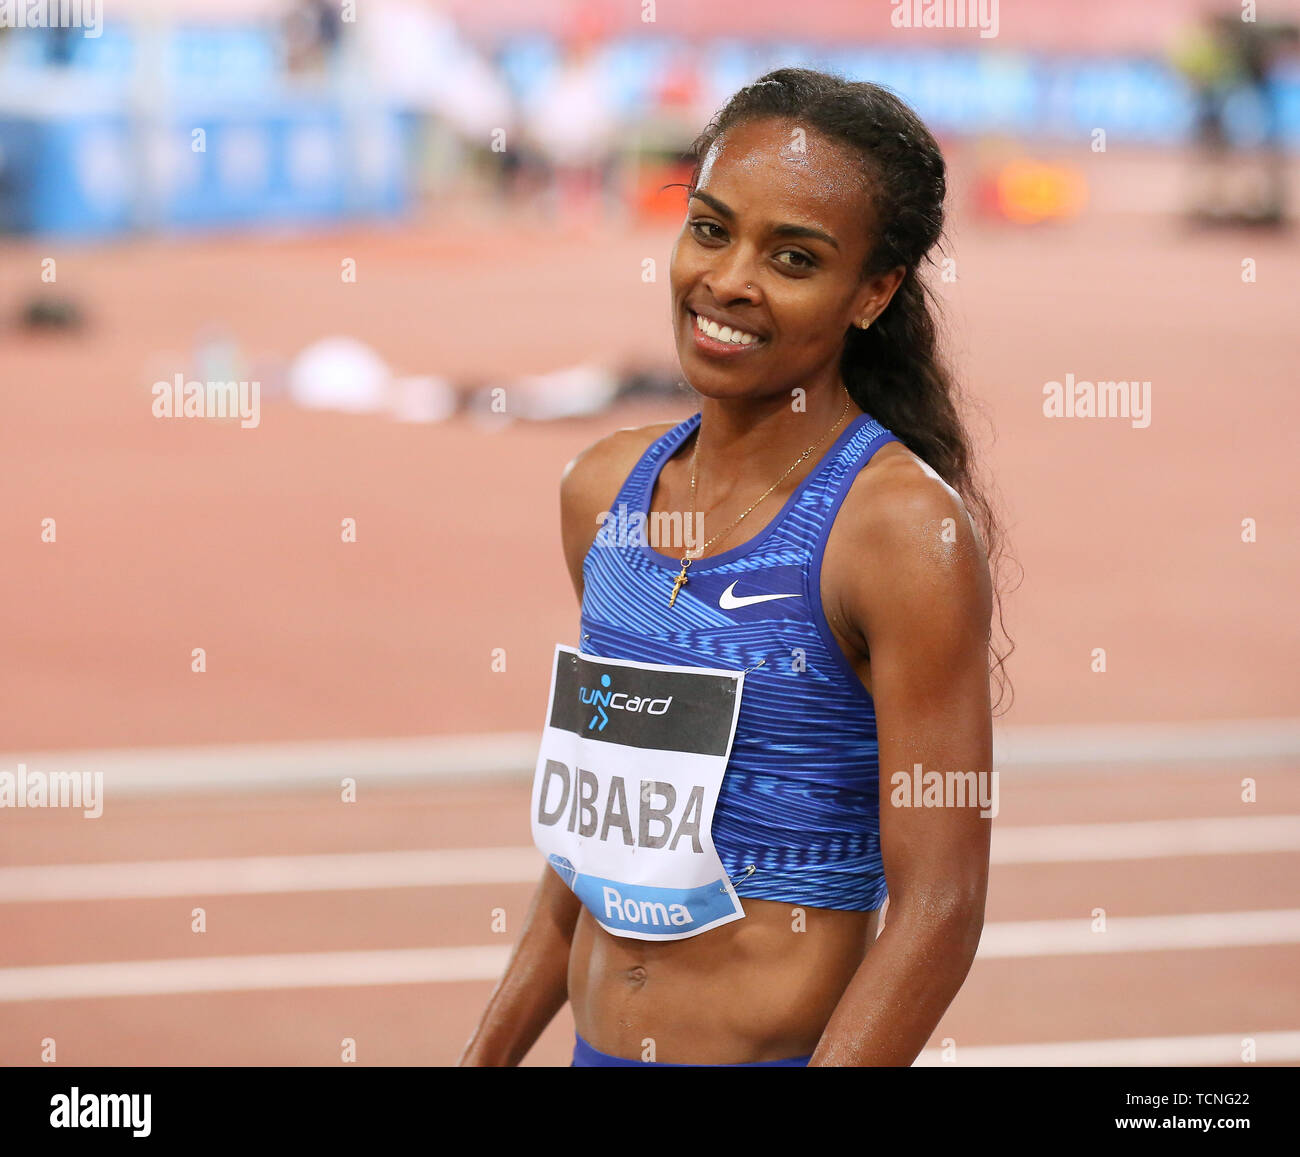 ROME, ITALIE - 06 juin : Genzebe Dibaba d'Éthiopie remporte le 1500m femmes lors de l'événement l'IAAF Diamond League 2019 Golden Gala Pietro Mennea à Rome Banque D'Images